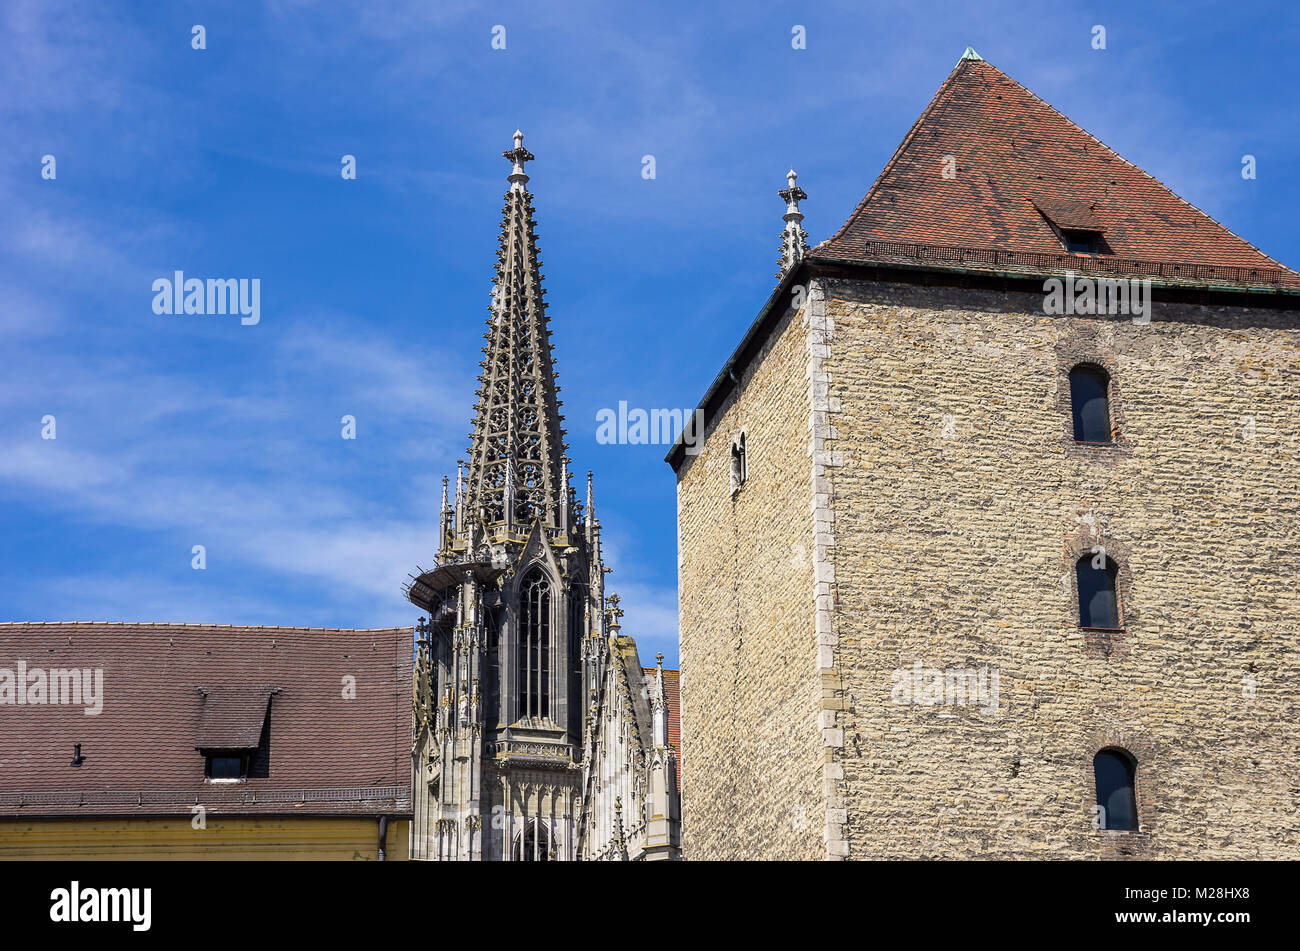 Römerturm Turm und Türme der Kathedrale St. Peter in Regensburg, Bayern, Deutschland. Stockfoto